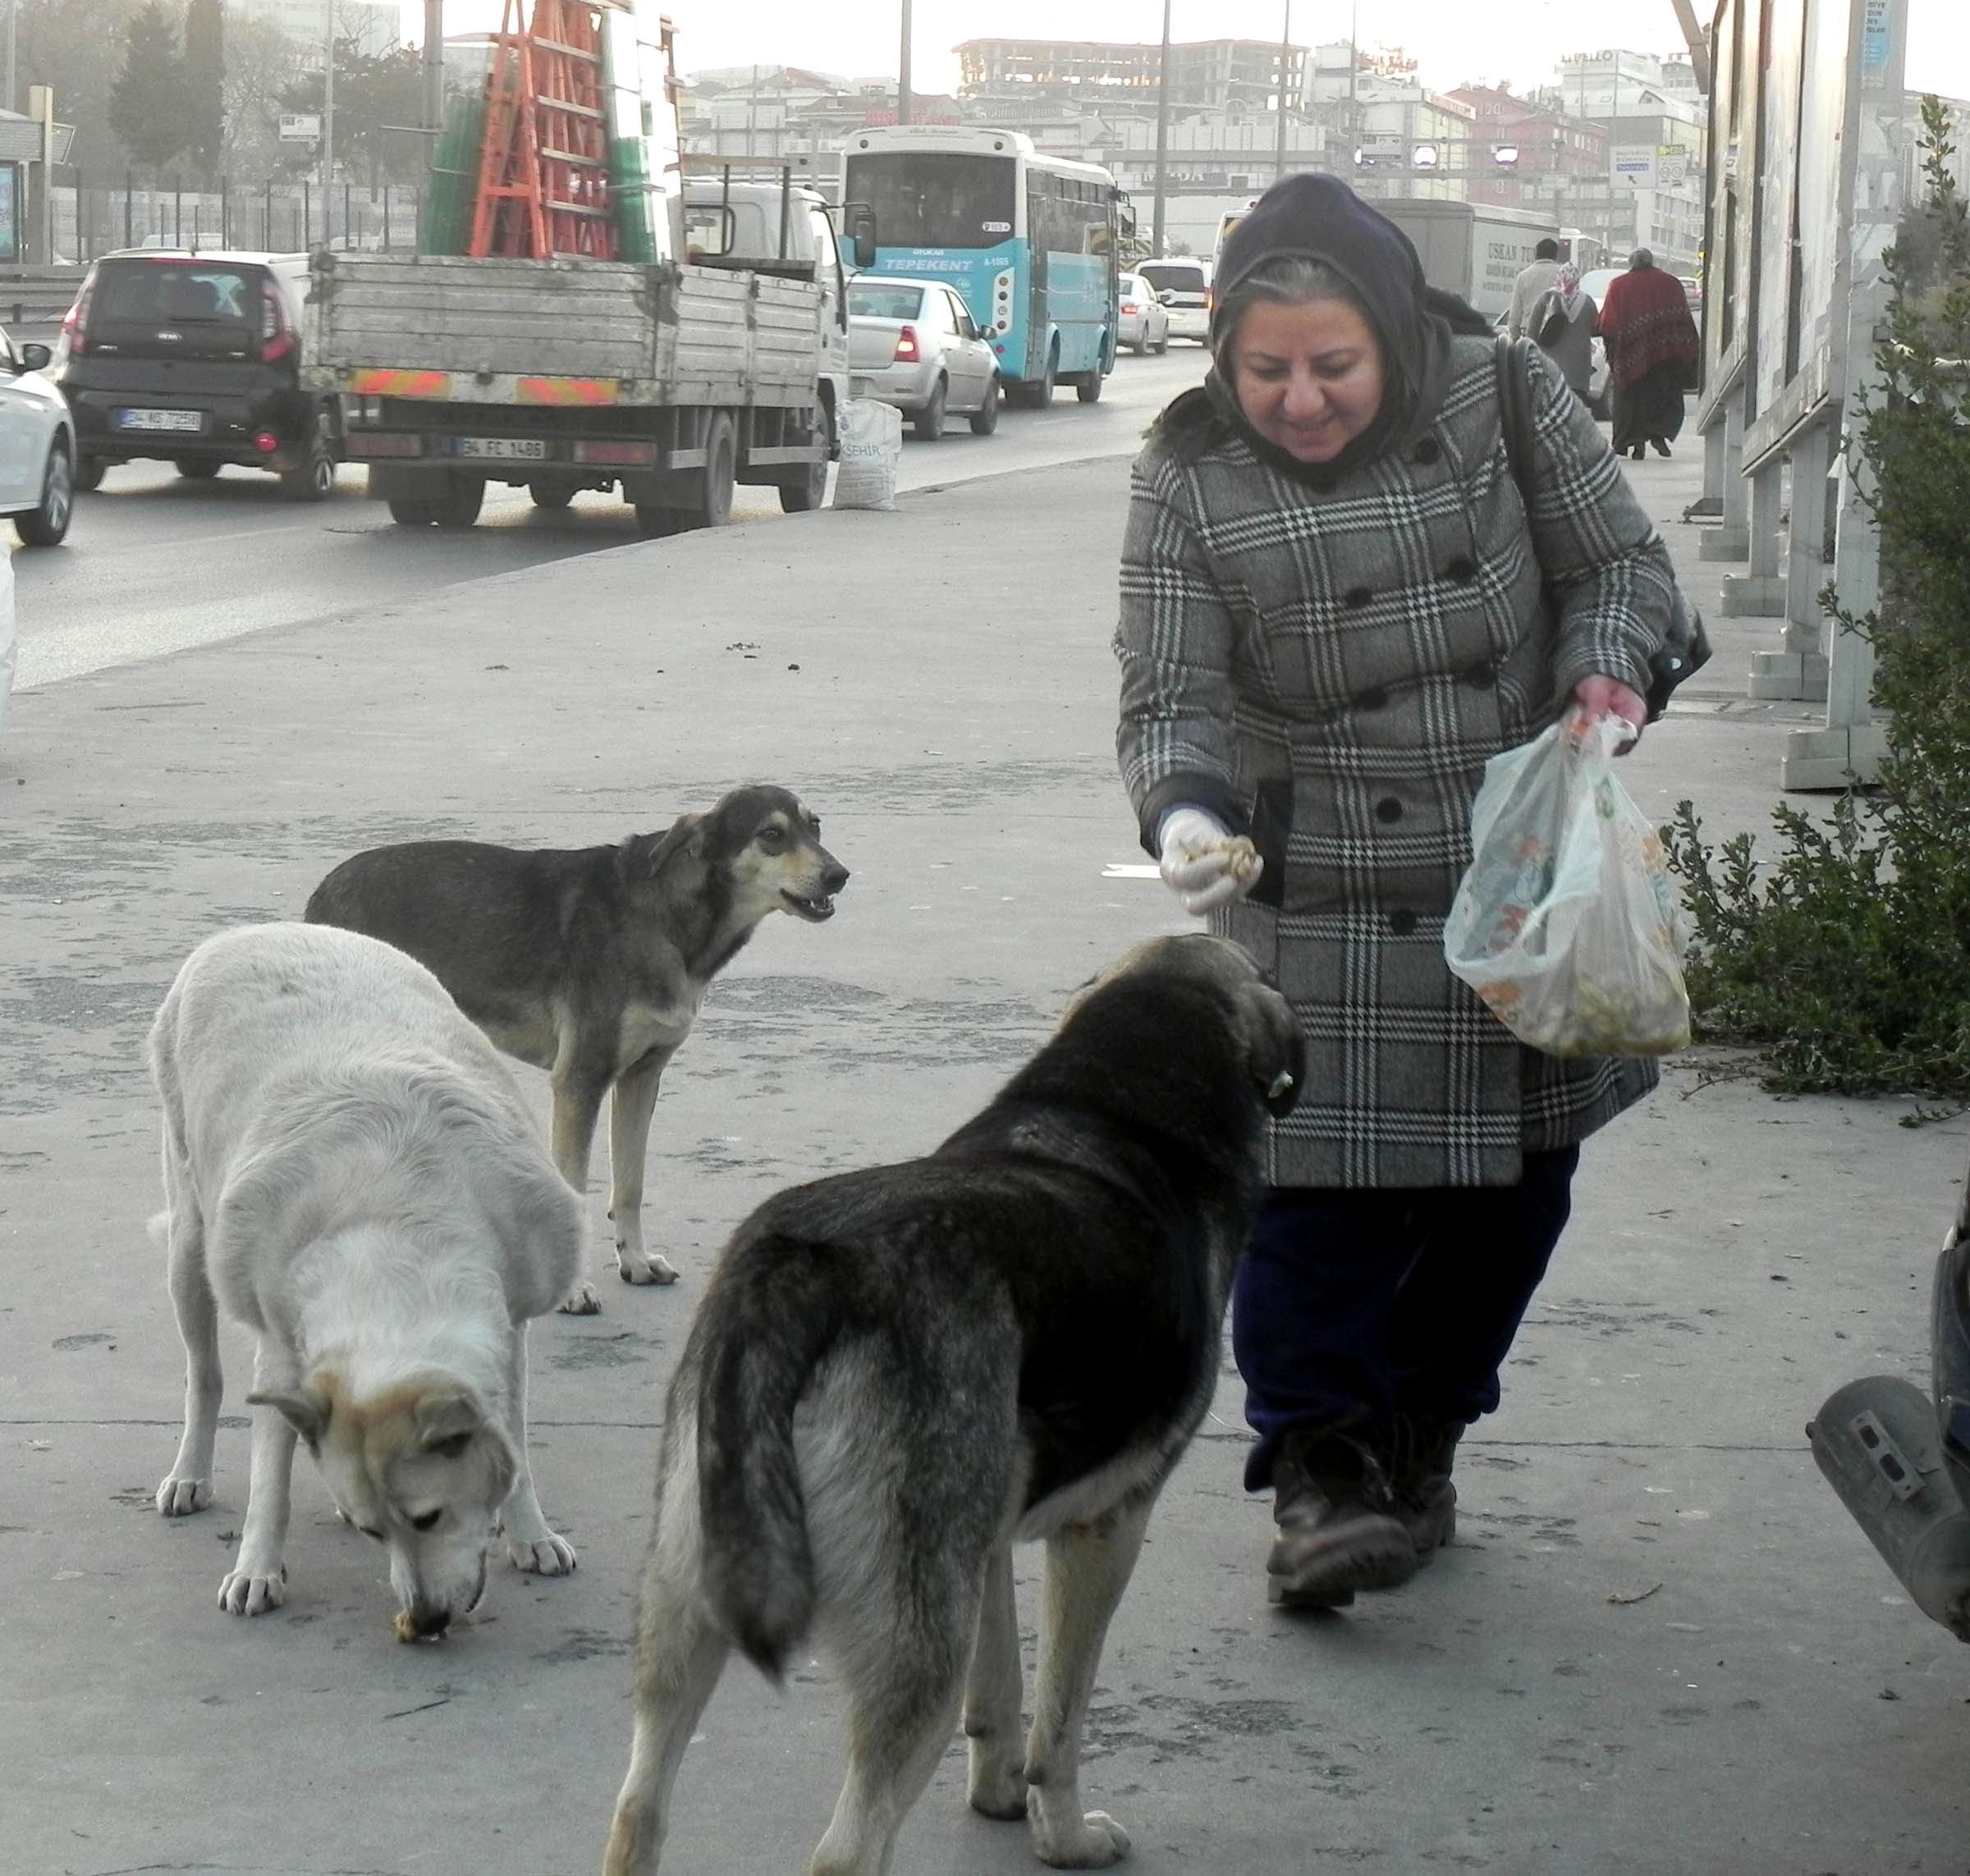 Sokak köpeklerini besleyen kadından sitemli sözler